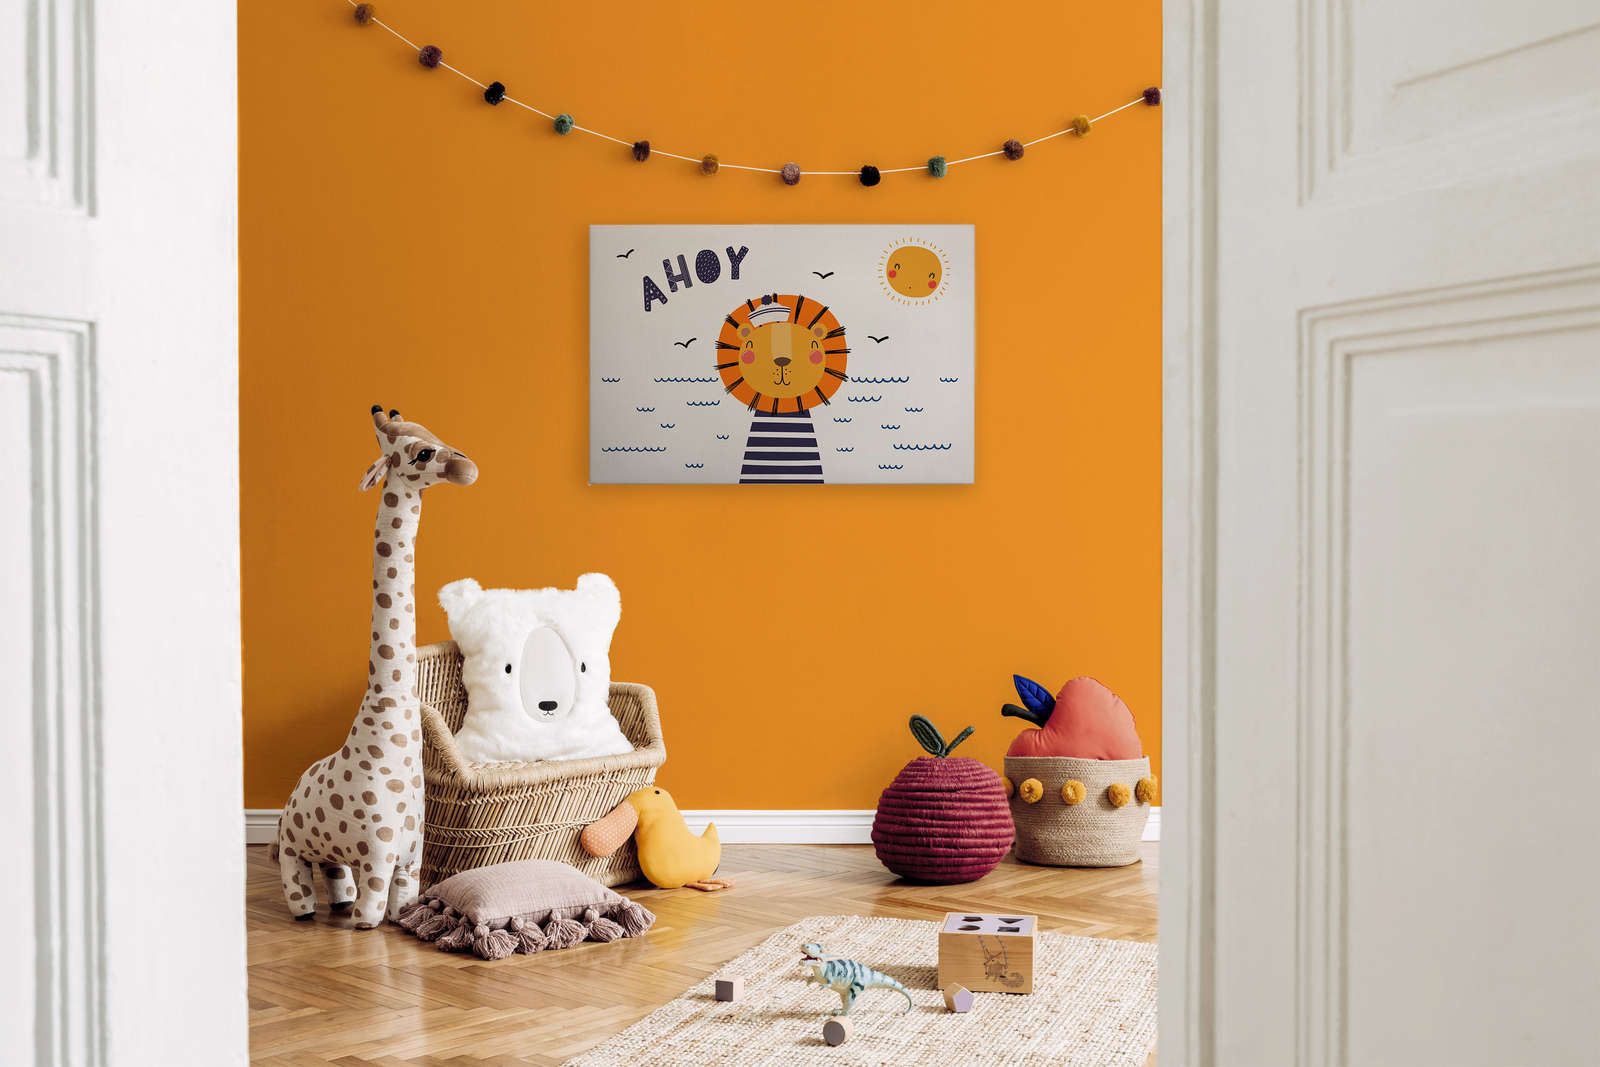             Leinwand fürs Kinderzimmer mit Löwen-Pirat – 90 cm x 60 cm
        